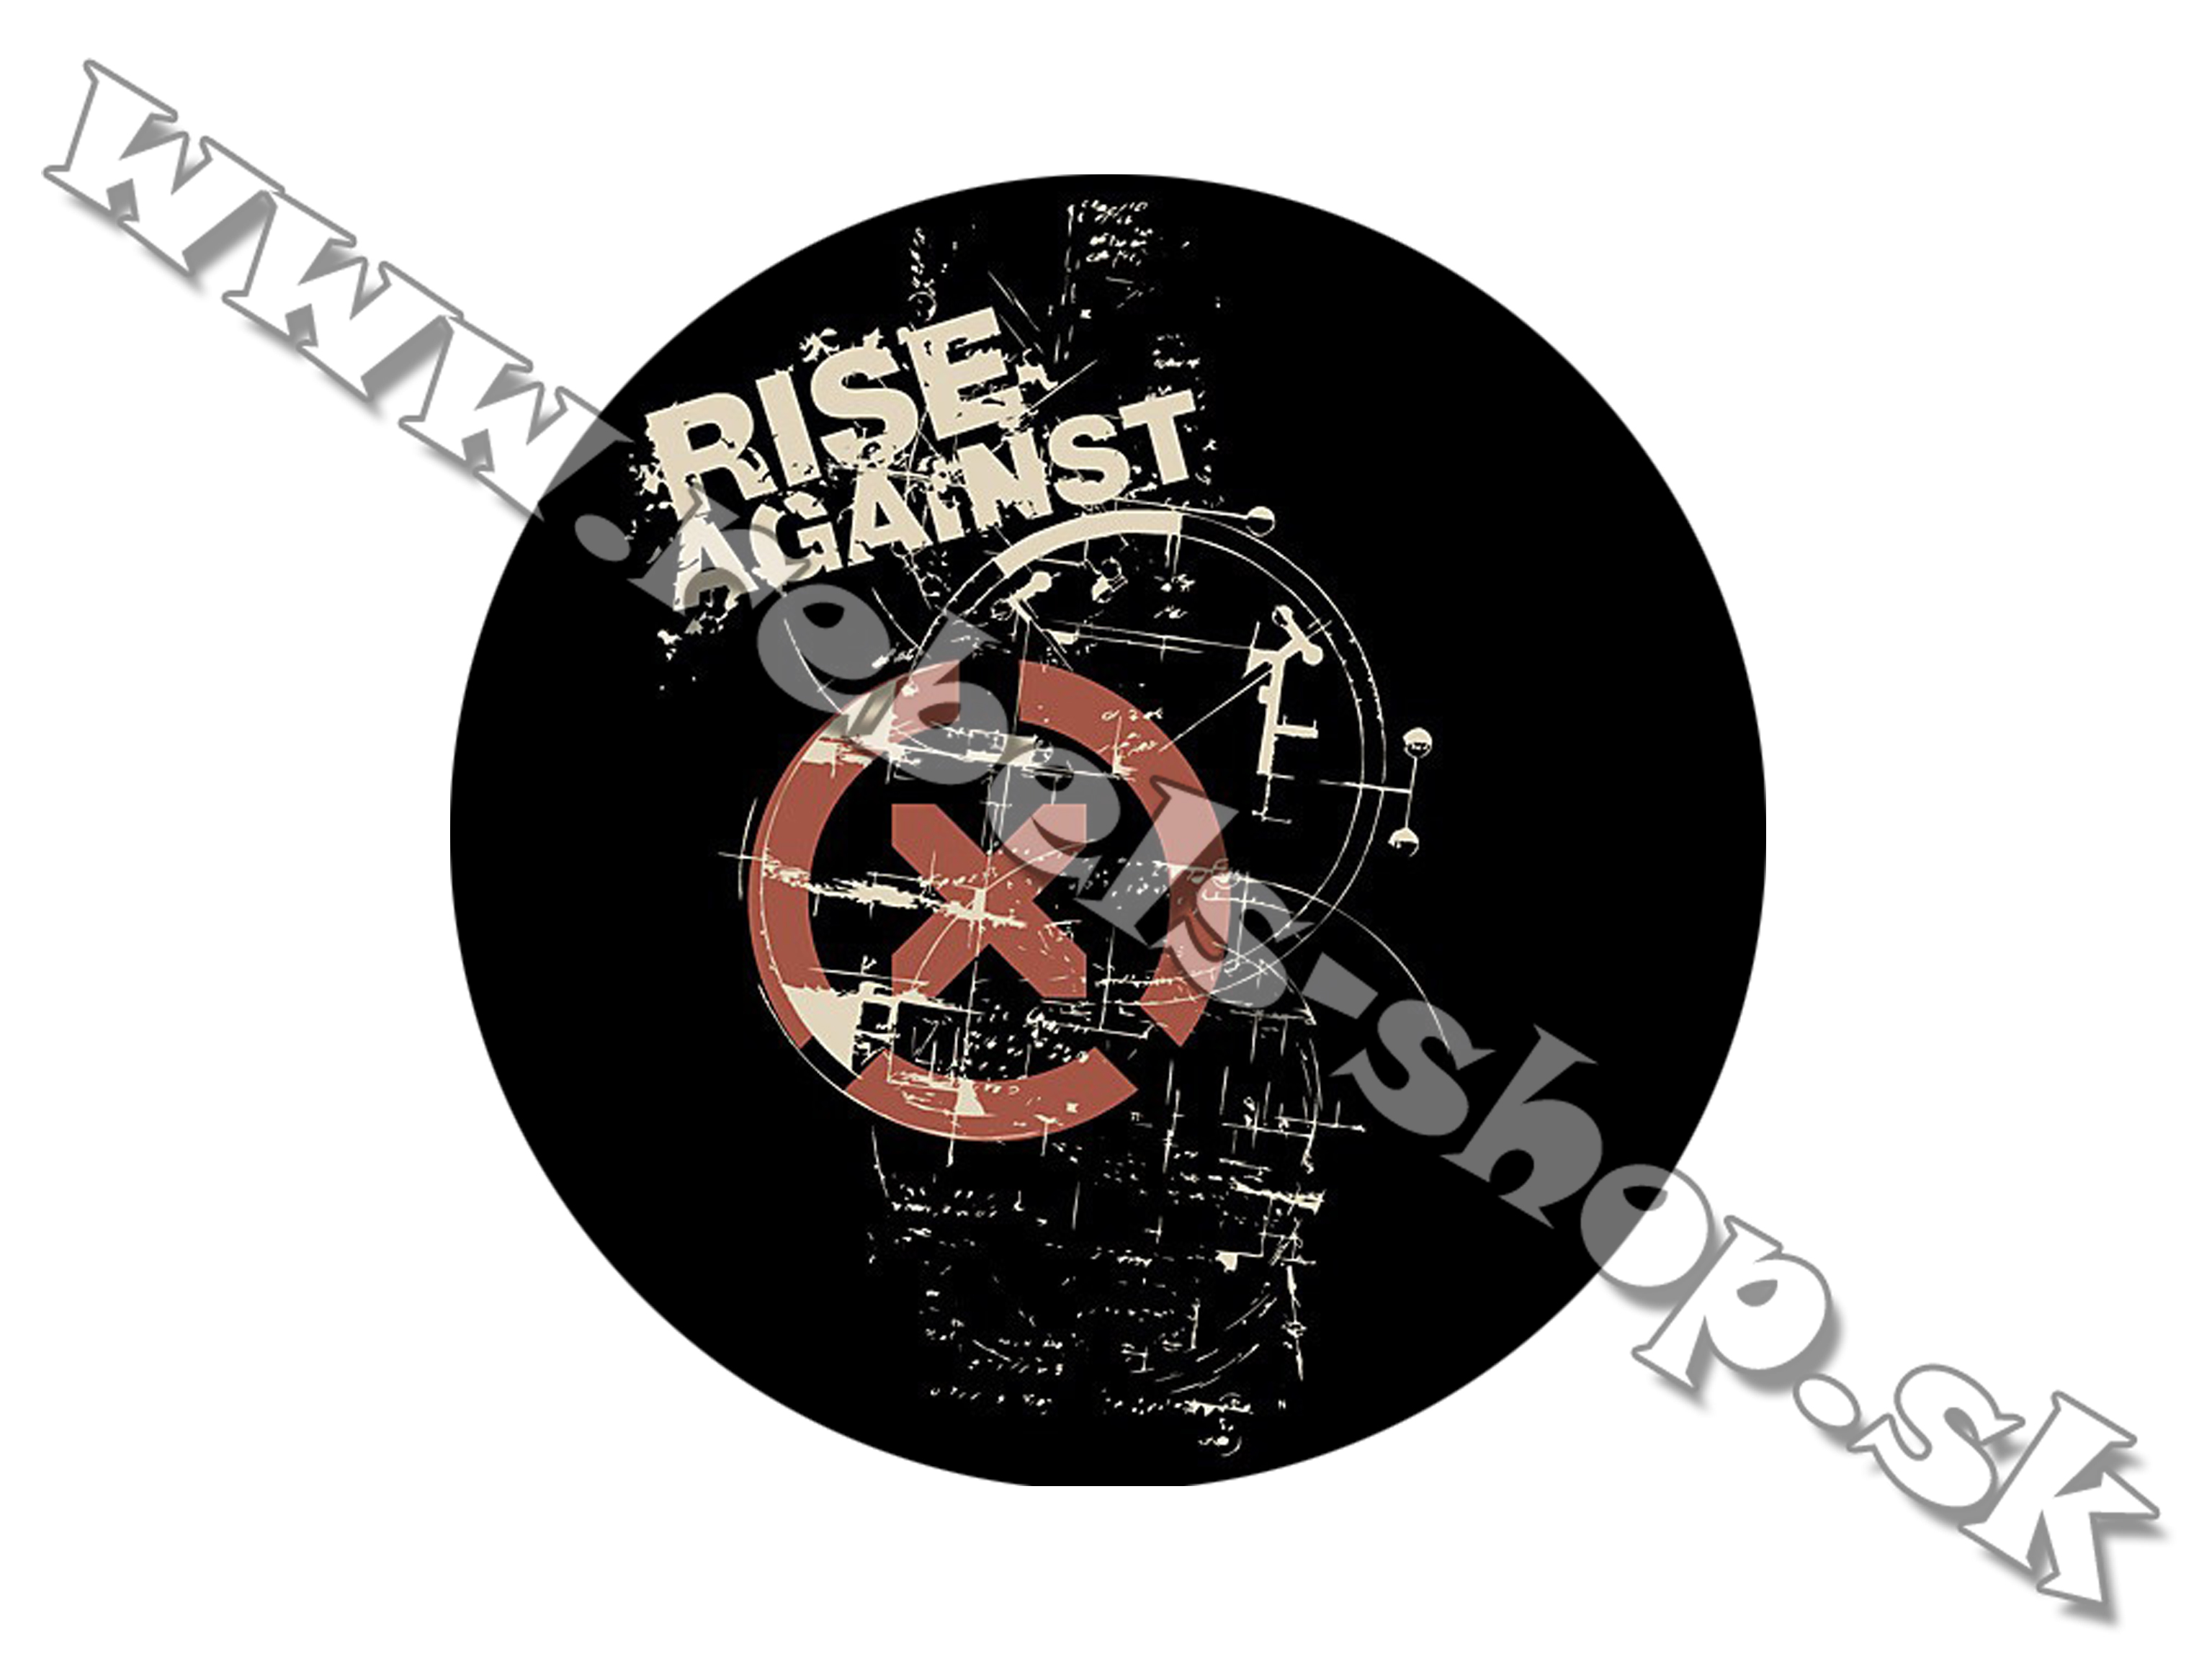 Odznak "Rise Against"